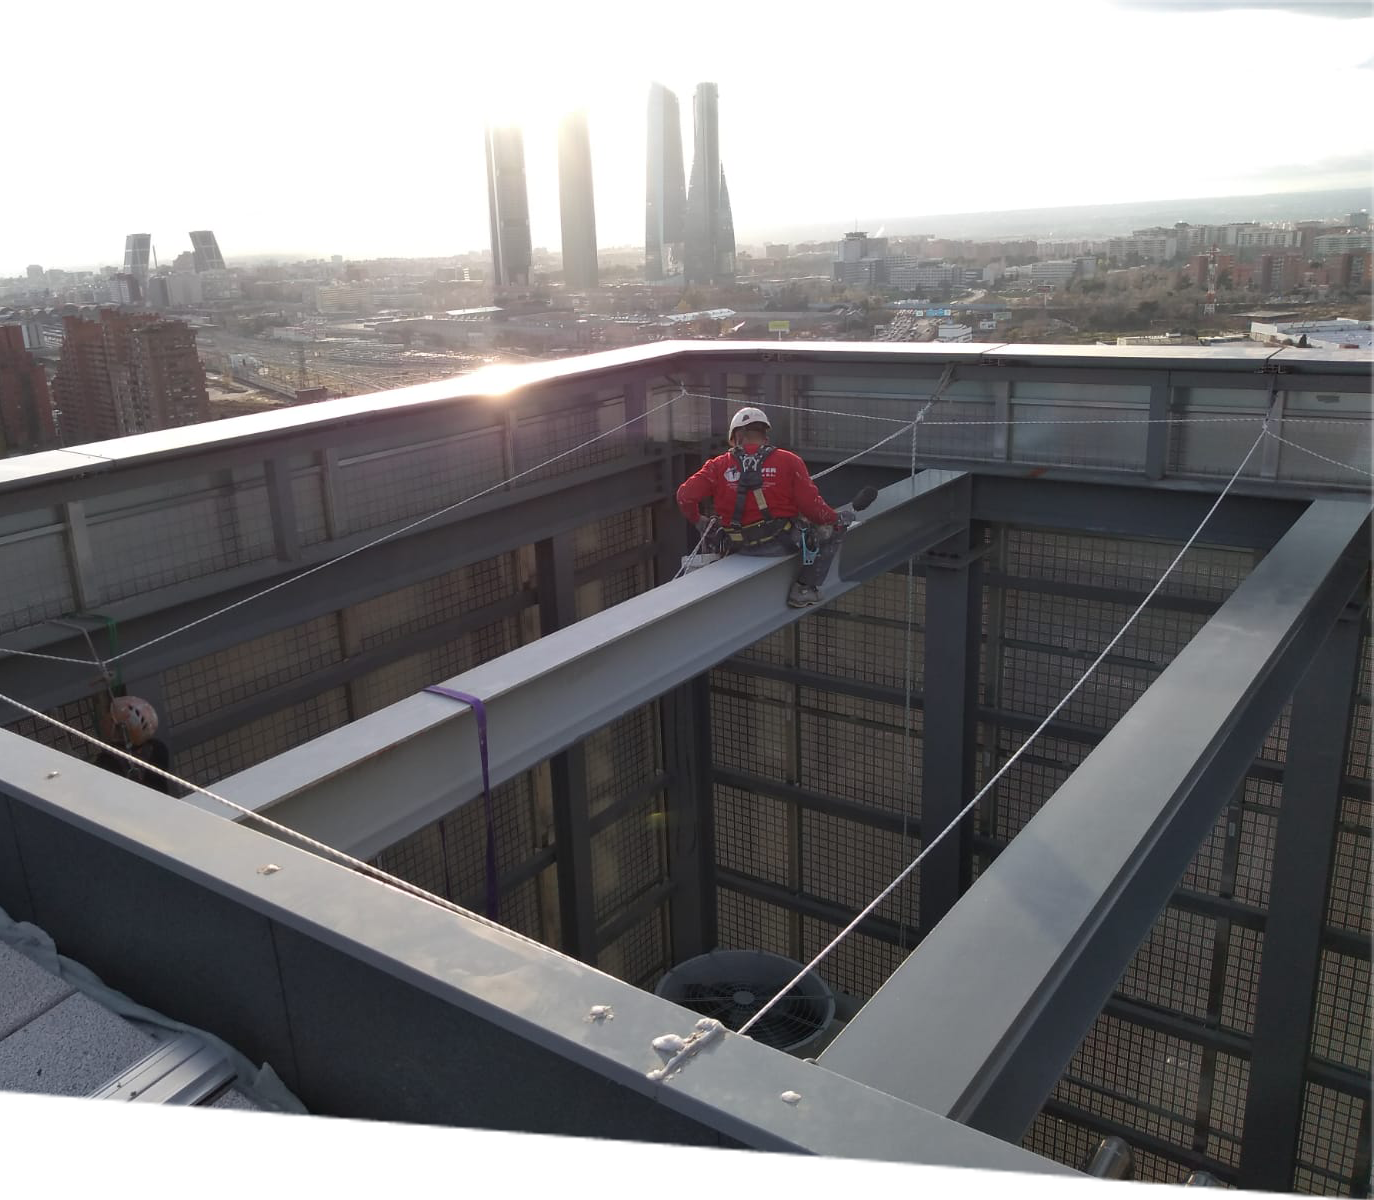 Operario de construcción en equipo de seguridad rojo asegurado con arnés mientras realiza trabajos de mantenimiento en la estructura metálica de un edificio alto, con el horizonte de Madrid y las Cuatro Torres en el fondo en un día soleado.